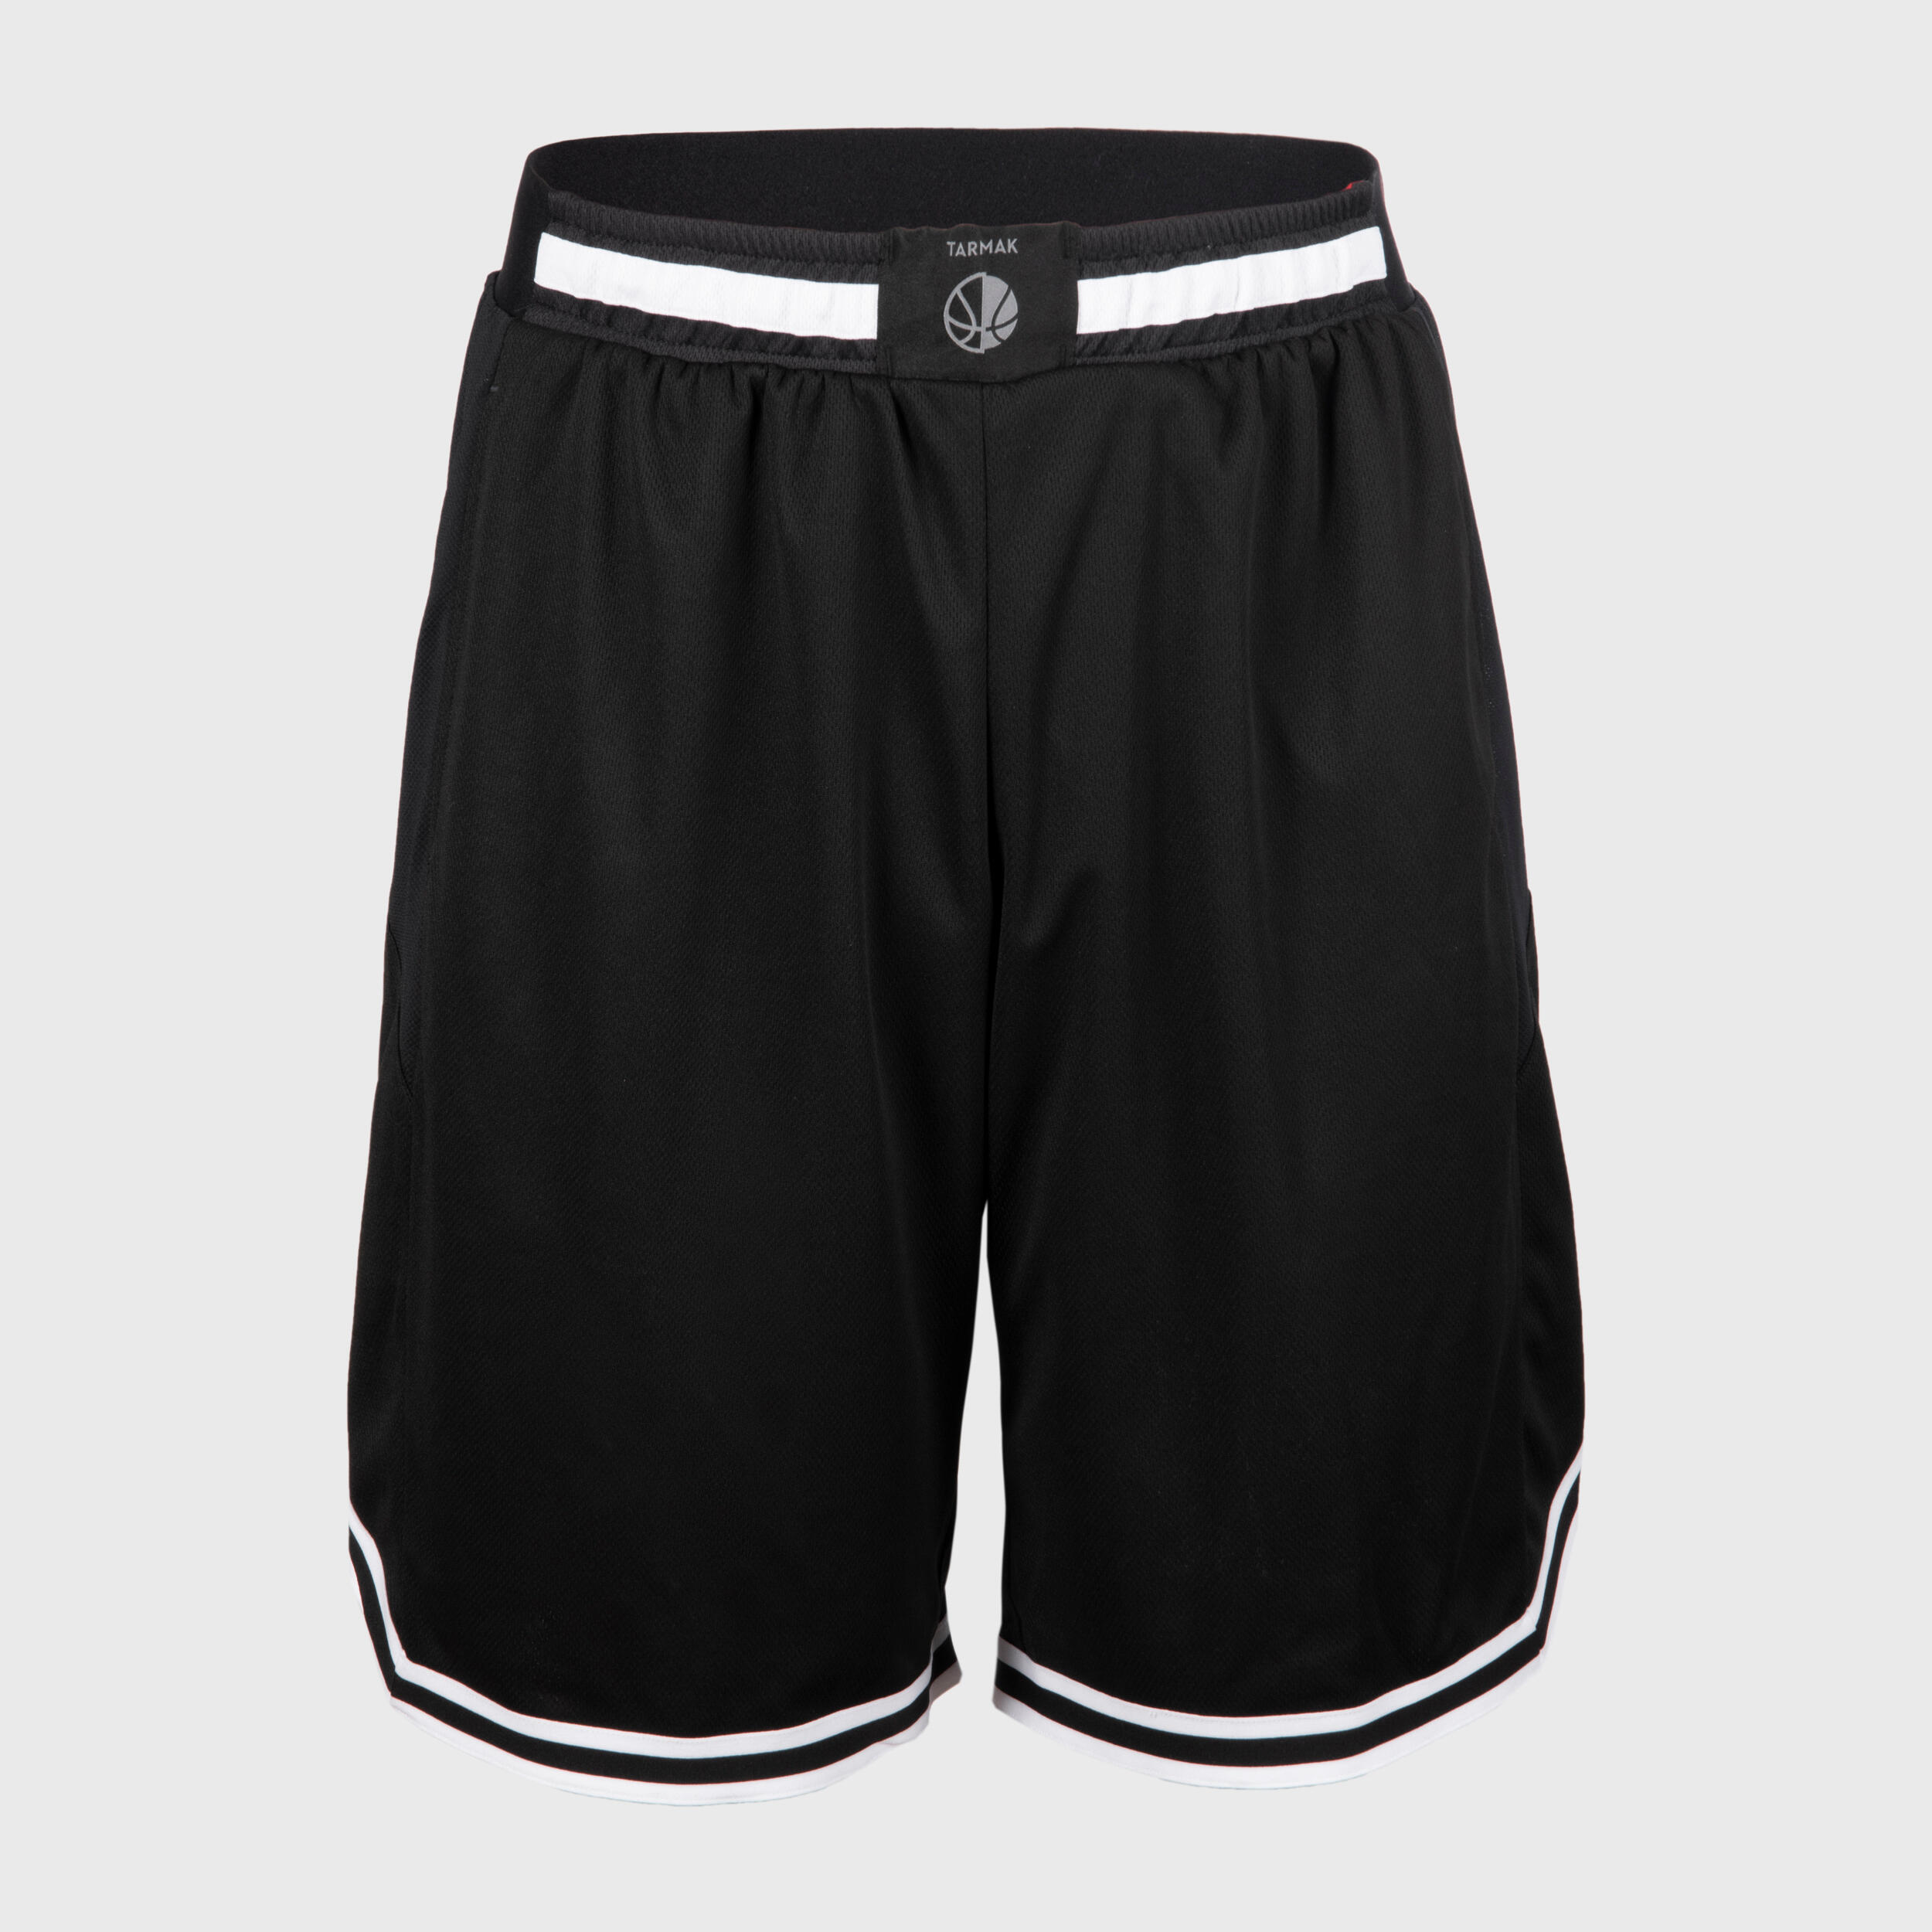 Men's/Women's Basketball Reversible Shorts SH500R - Black/Red 5/10